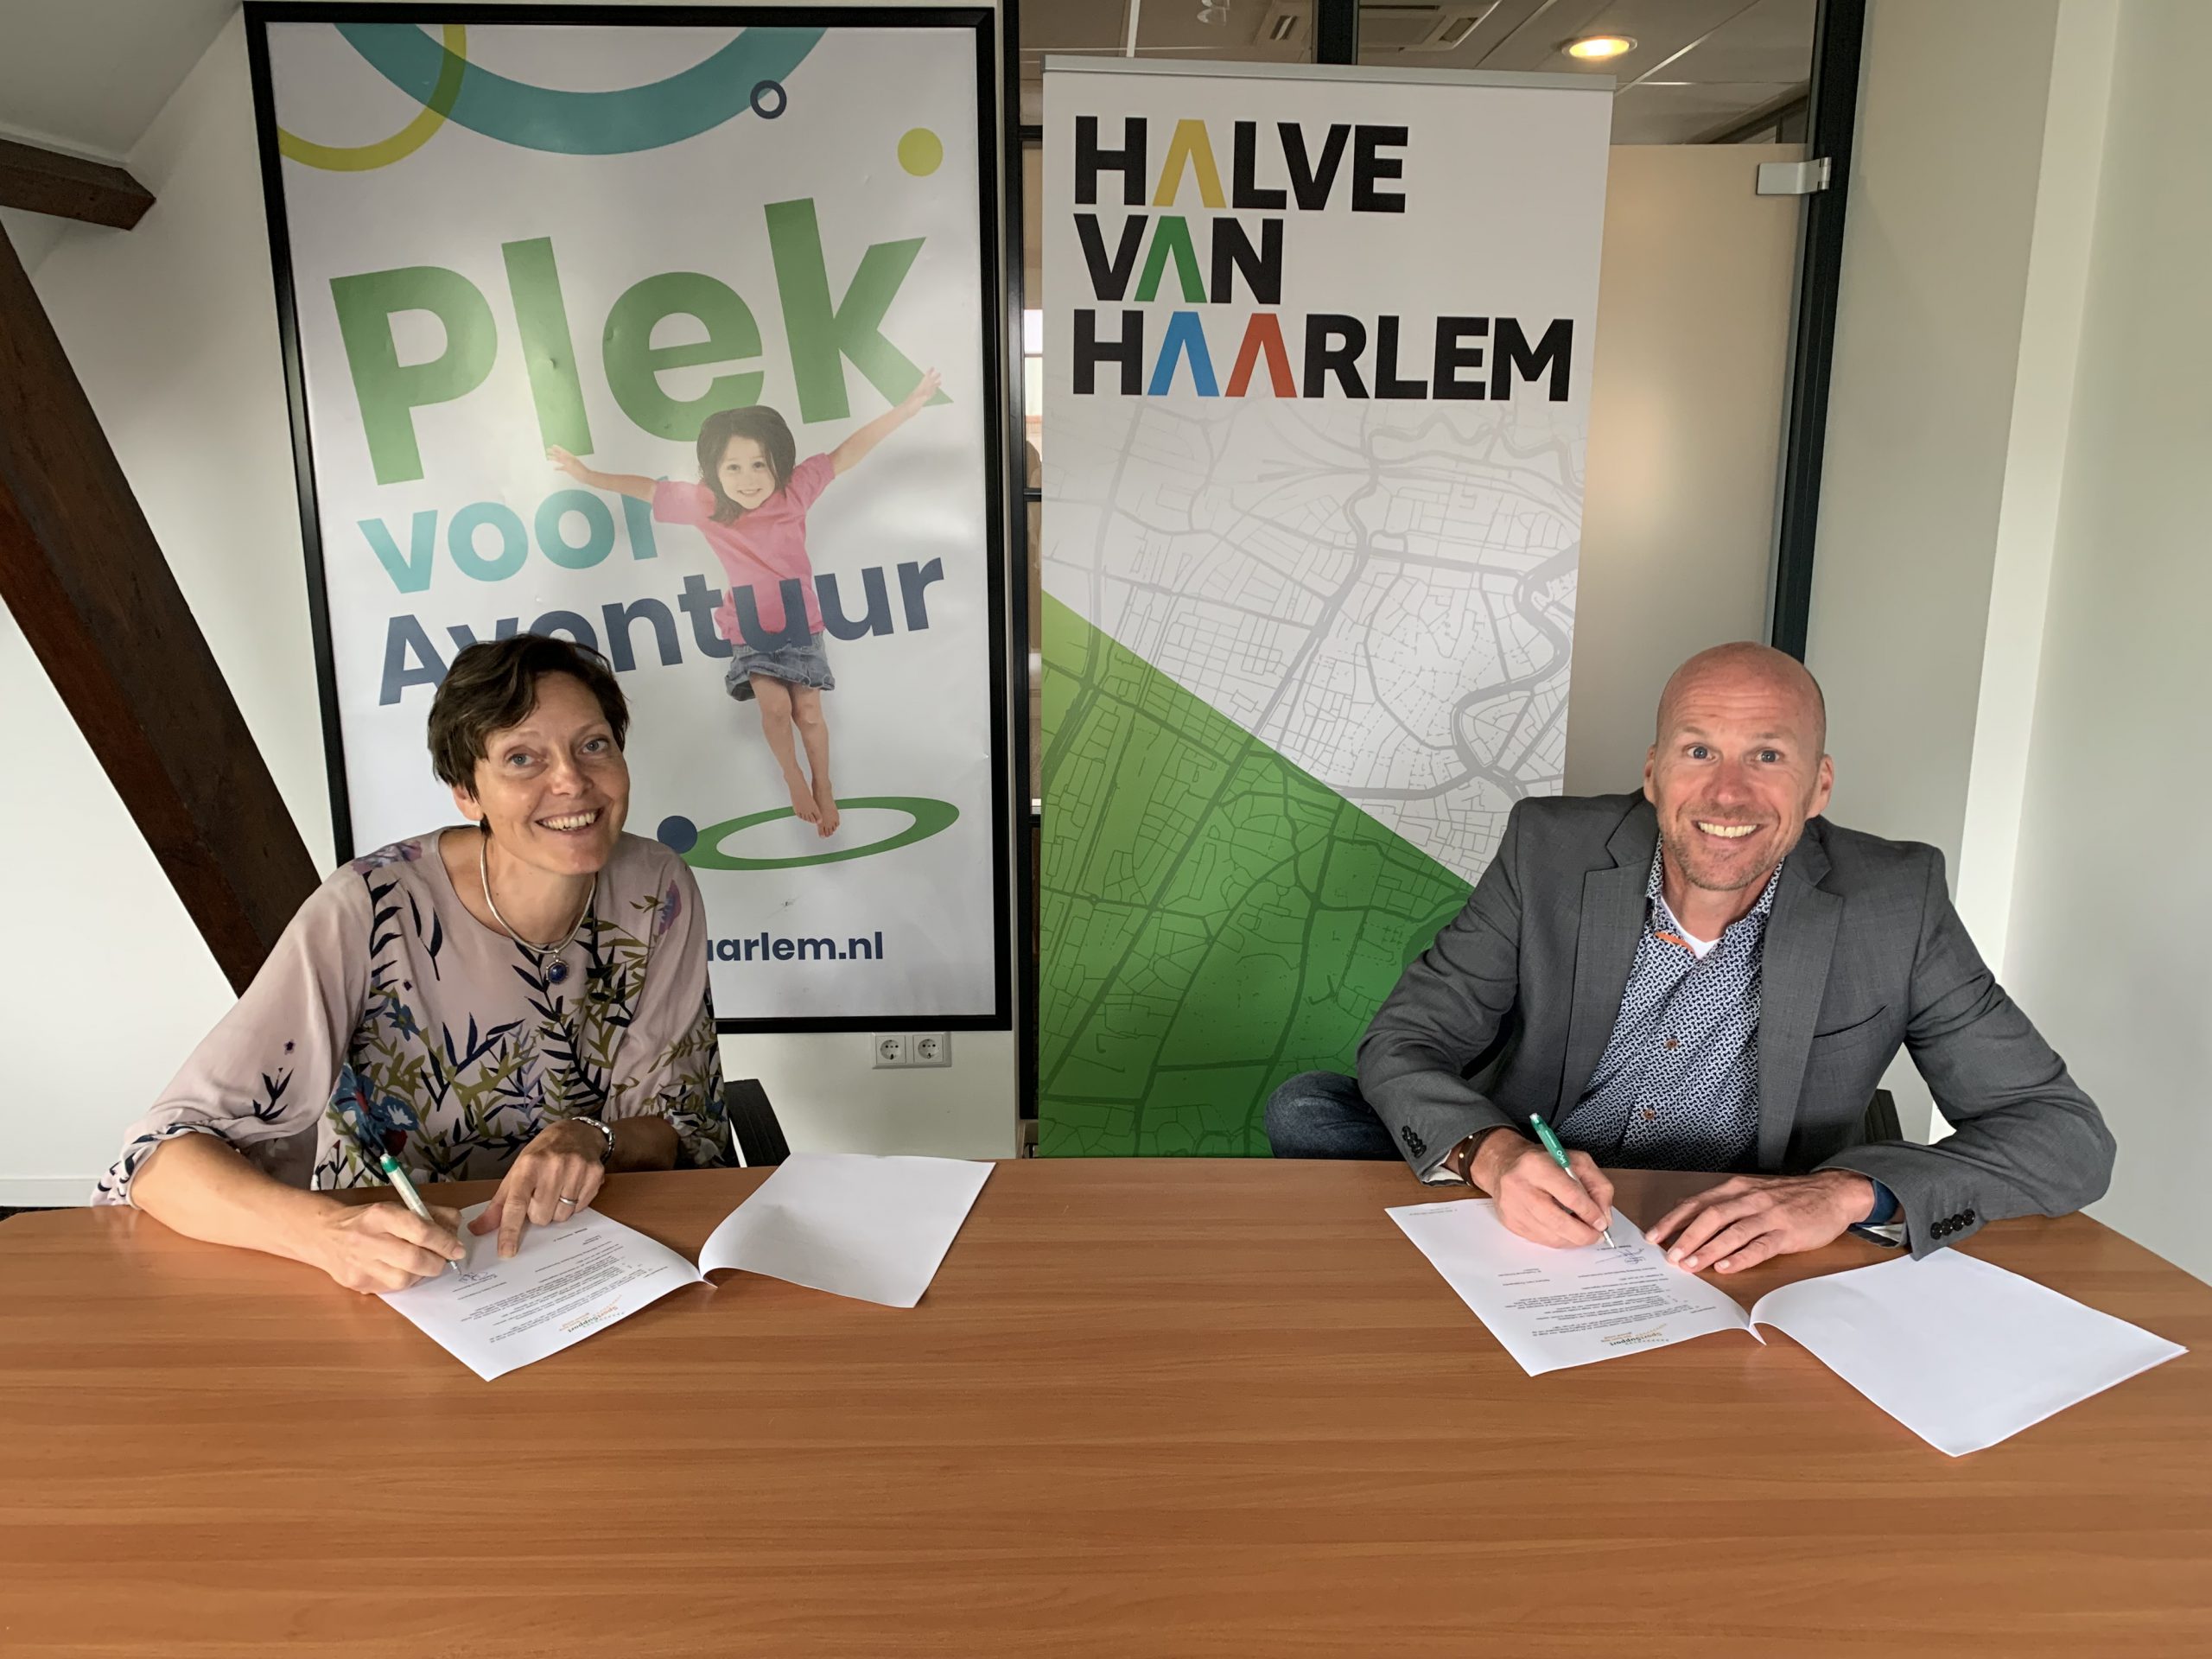 Hero kindercentra nieuwe sponsor van de Teva Halve van Haarlem